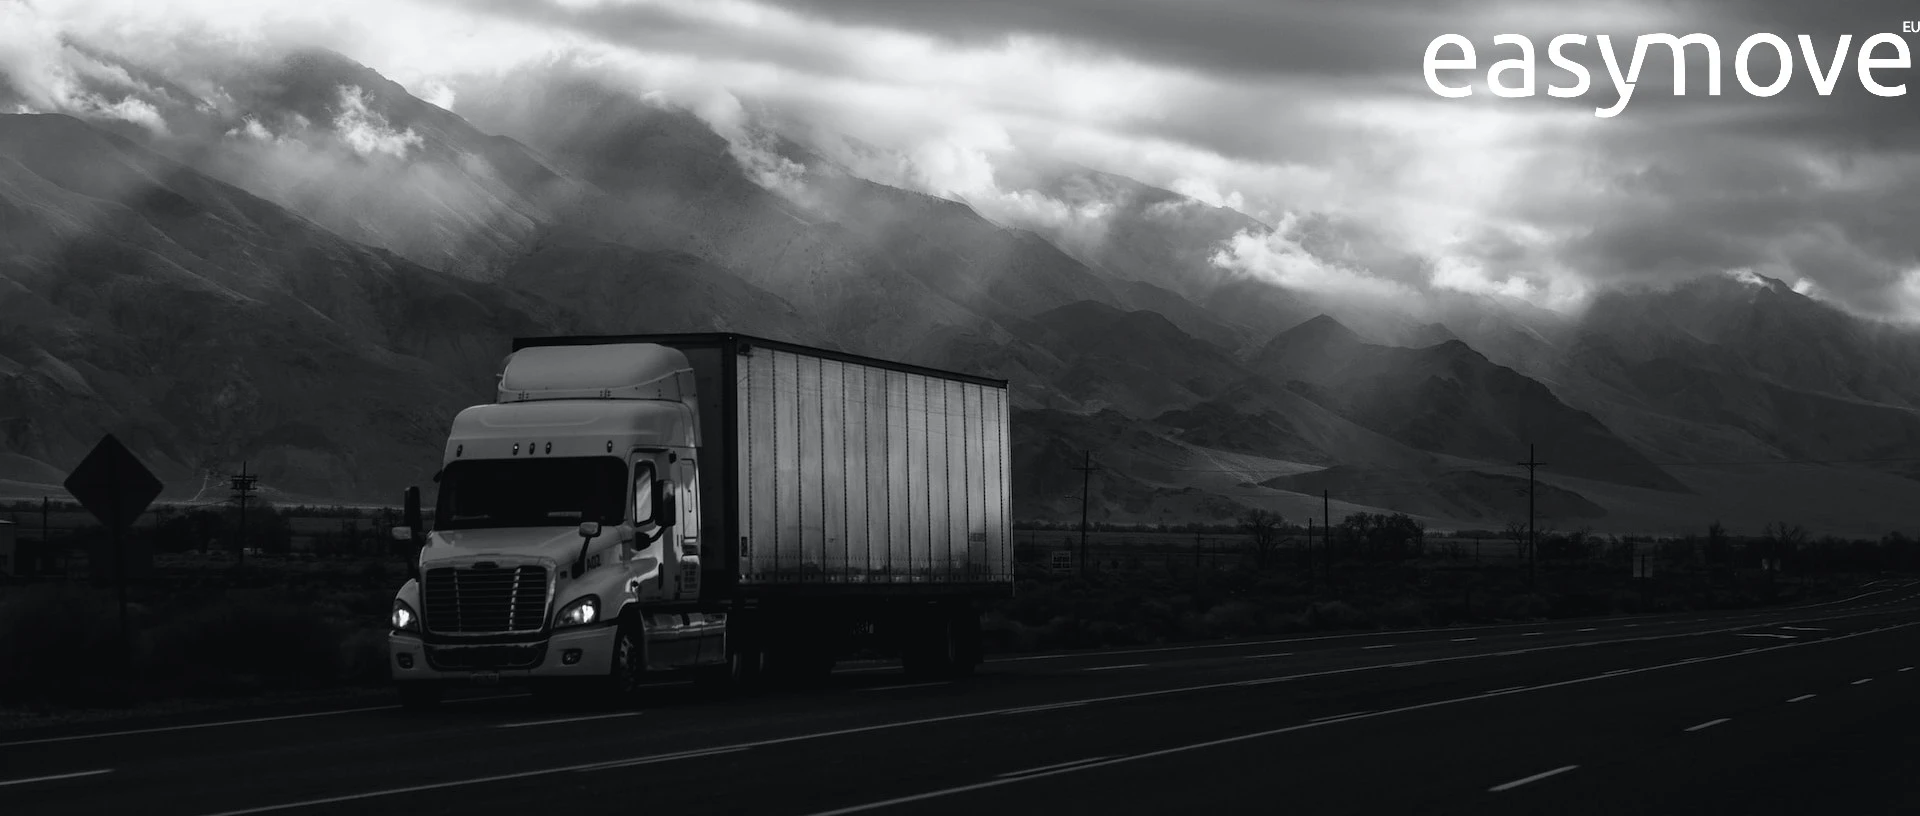 Servizi di trasporto merci e logistica in Europa: esplorare i vantaggi del trasporto dedicato x carico condiviso